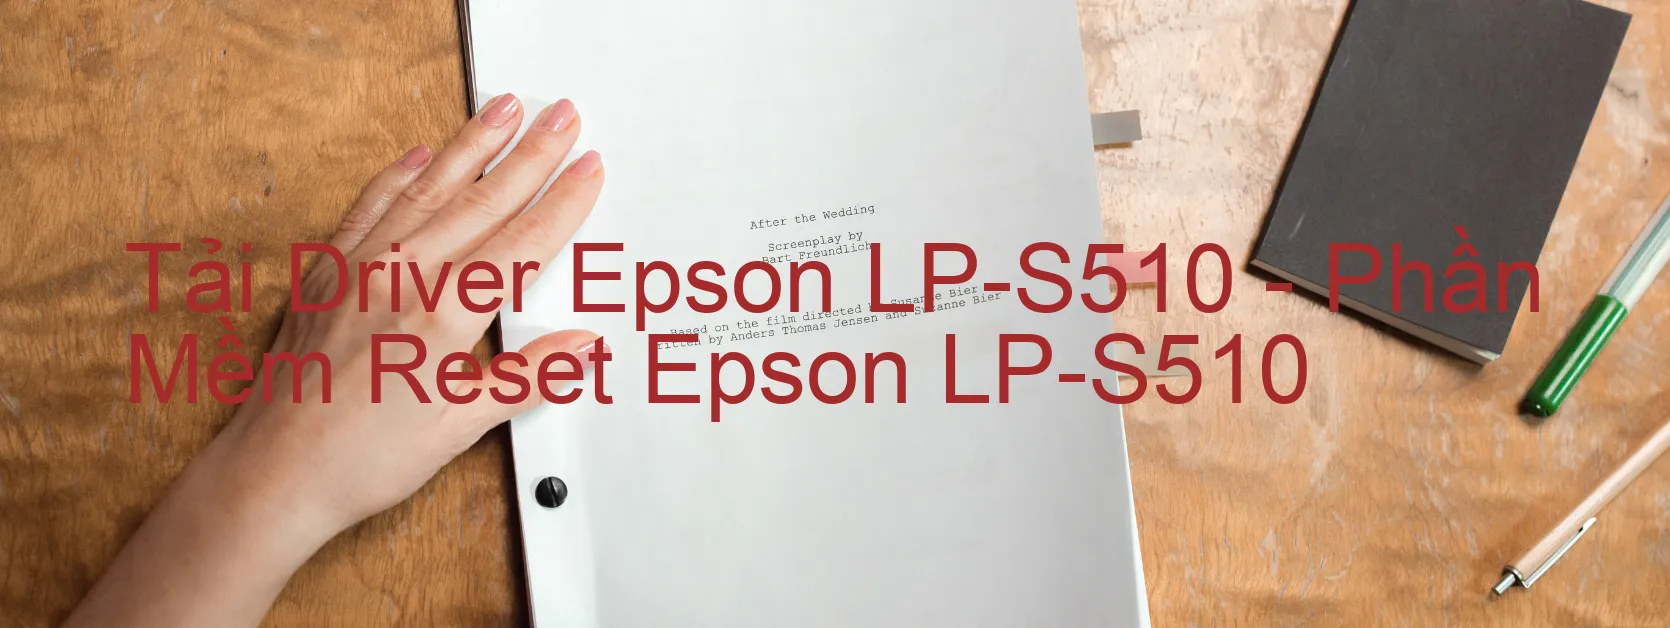 Driver Epson LP-S510, Phần Mềm Reset Epson LP-S510